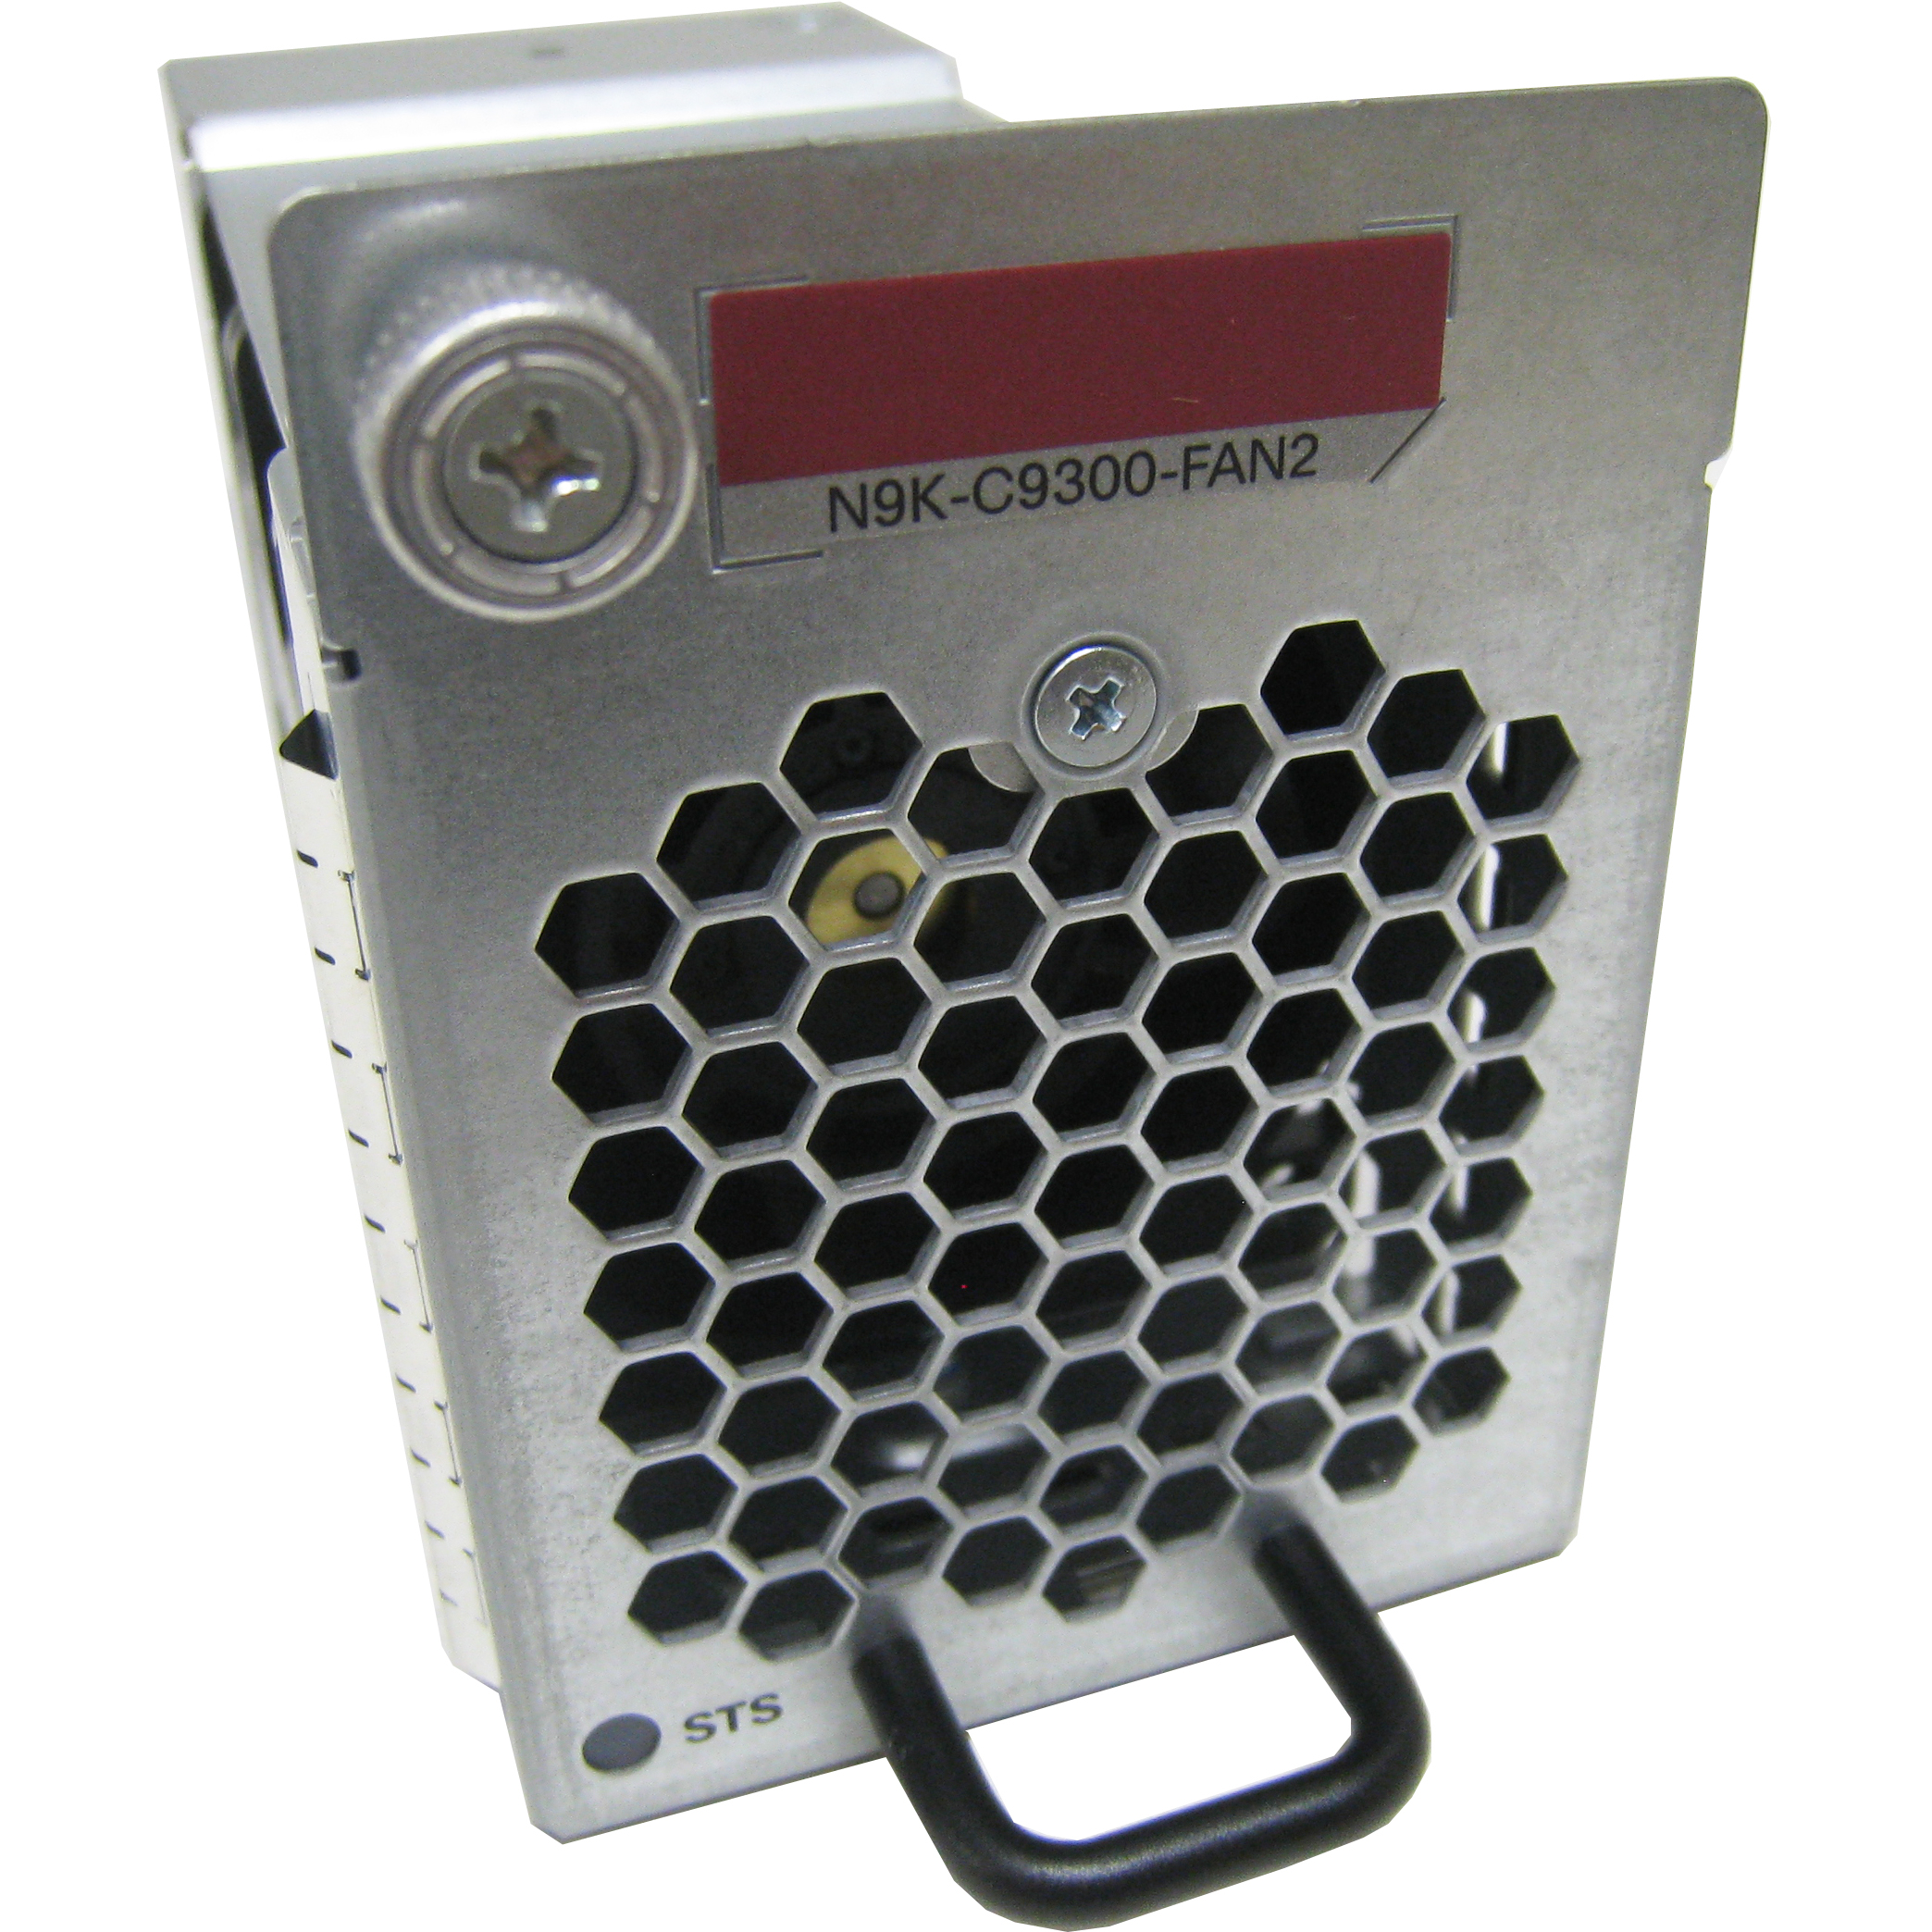 Cisco N9K-C9300-FAN2